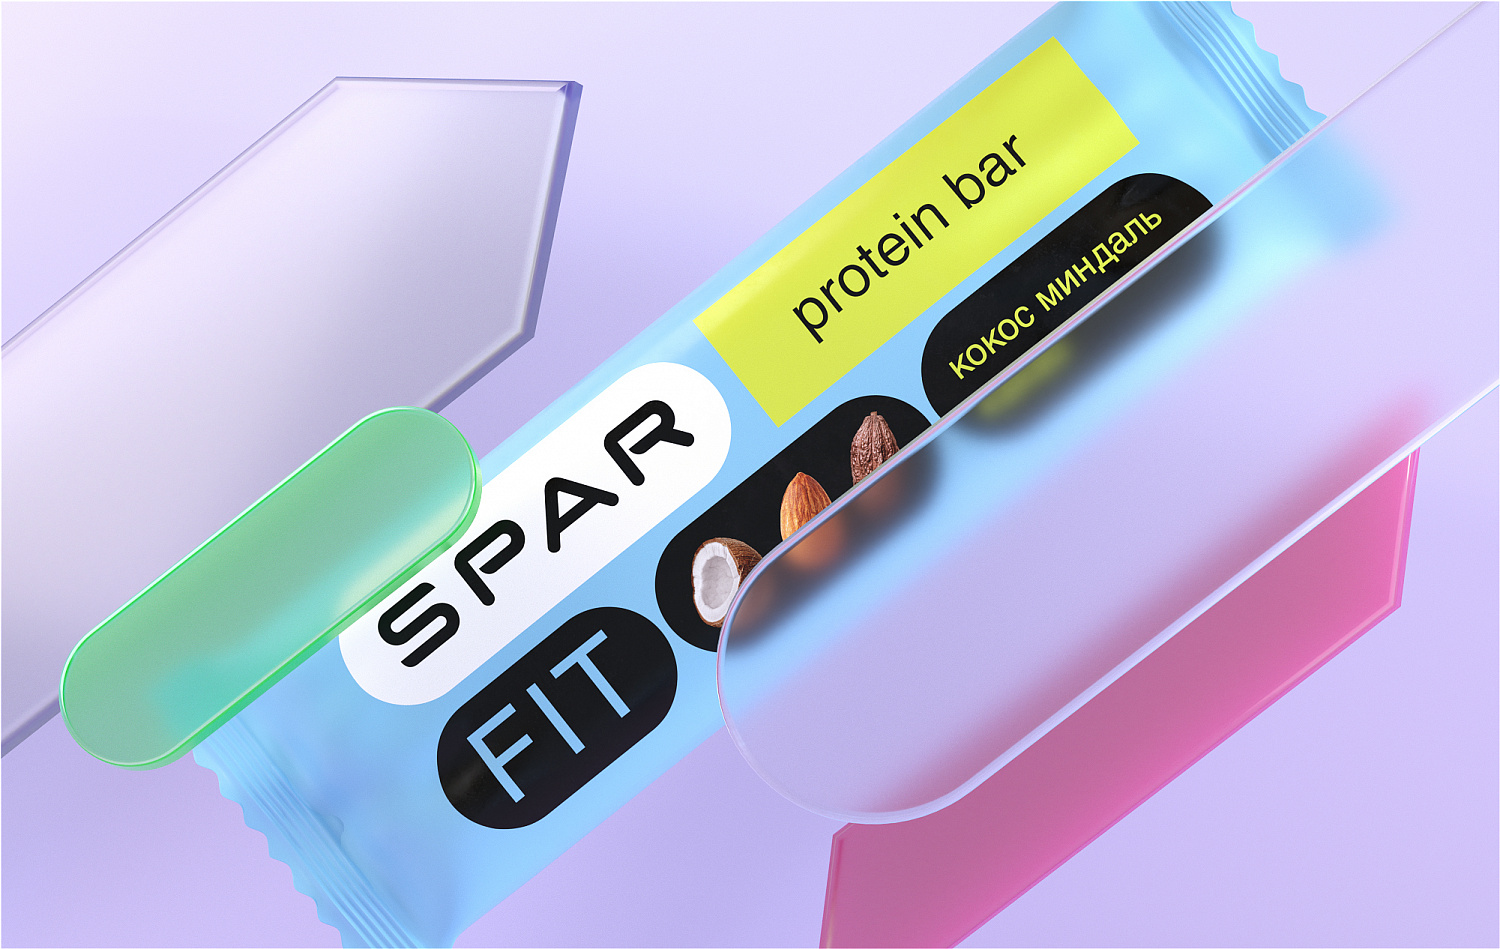 SPAR Fit: дизайн упаковки СТМ Spar - Портфолио Depot